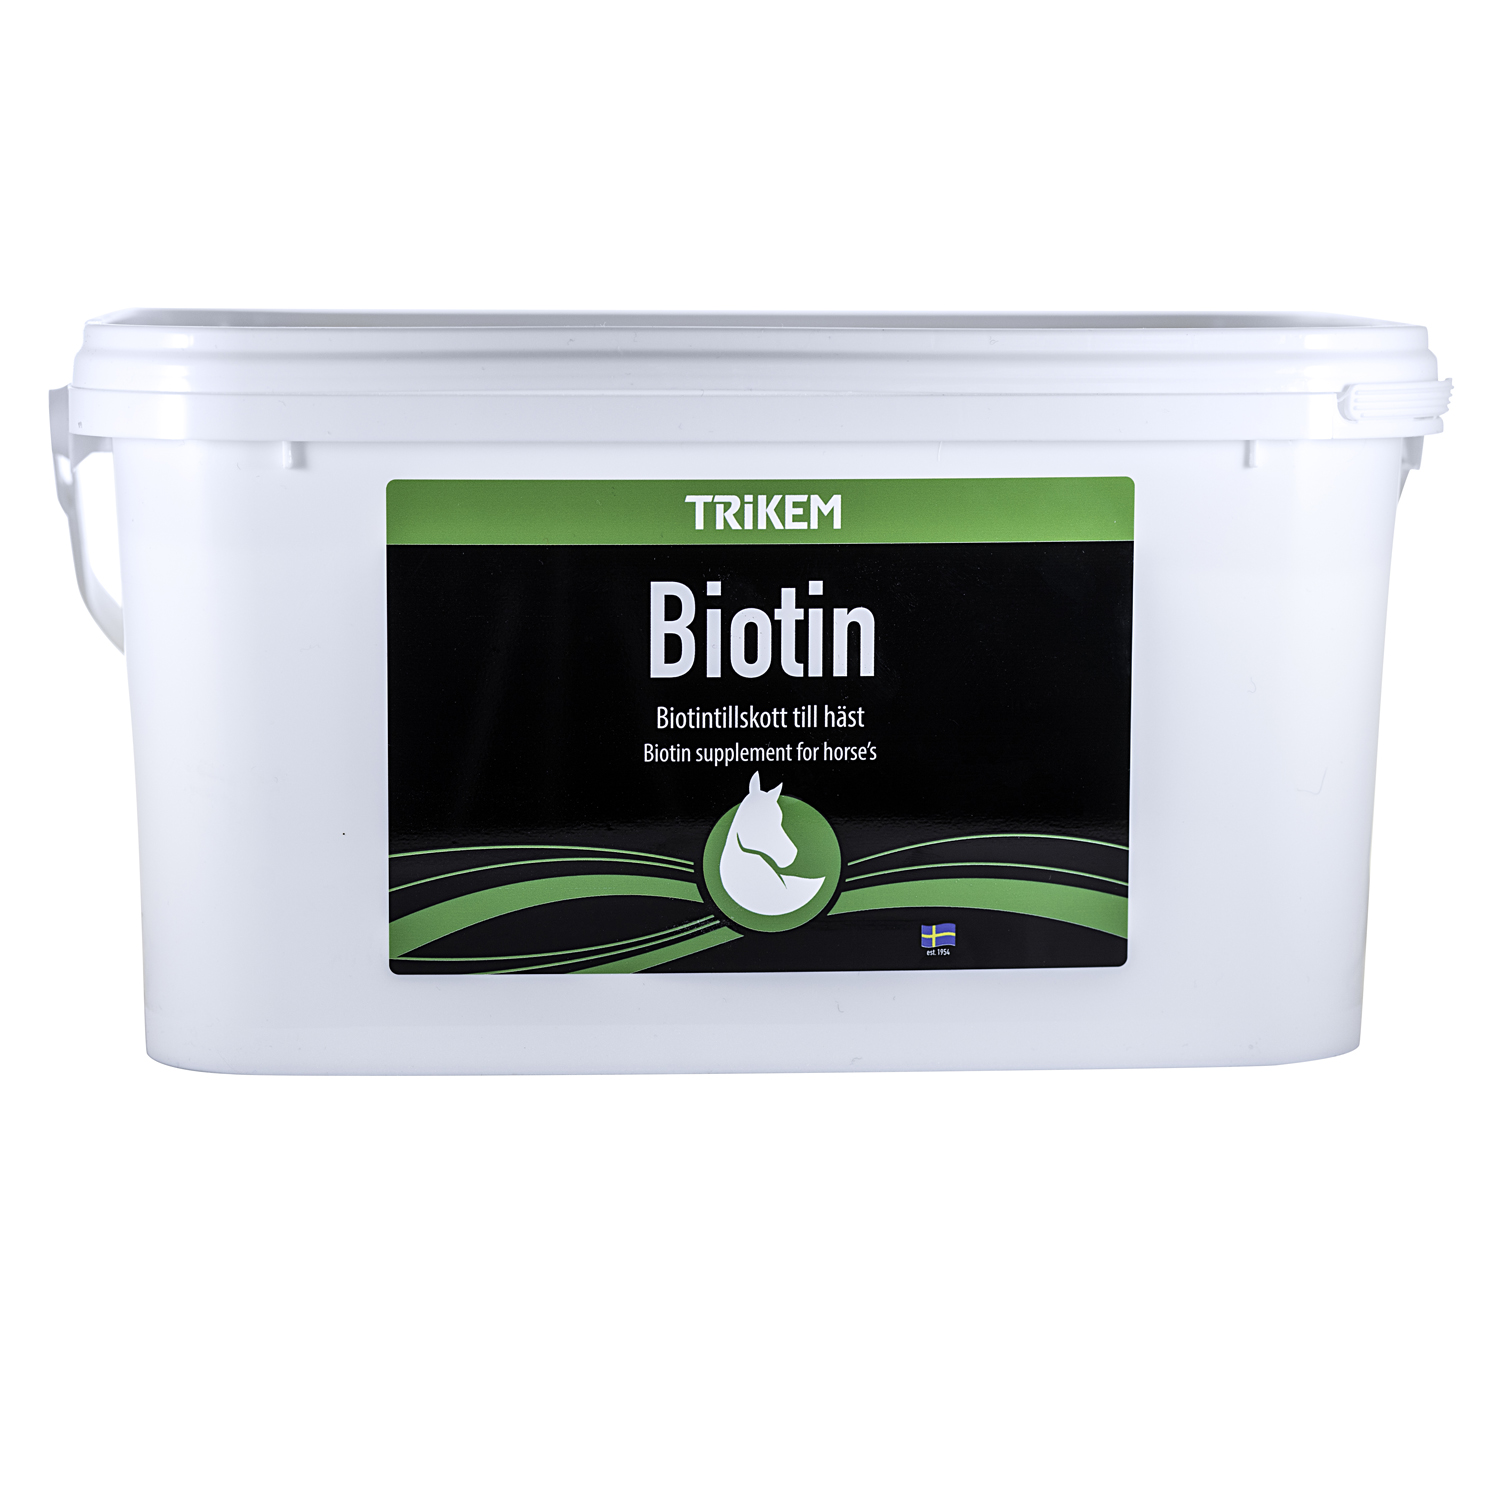 Trikem Biotin 4 kg